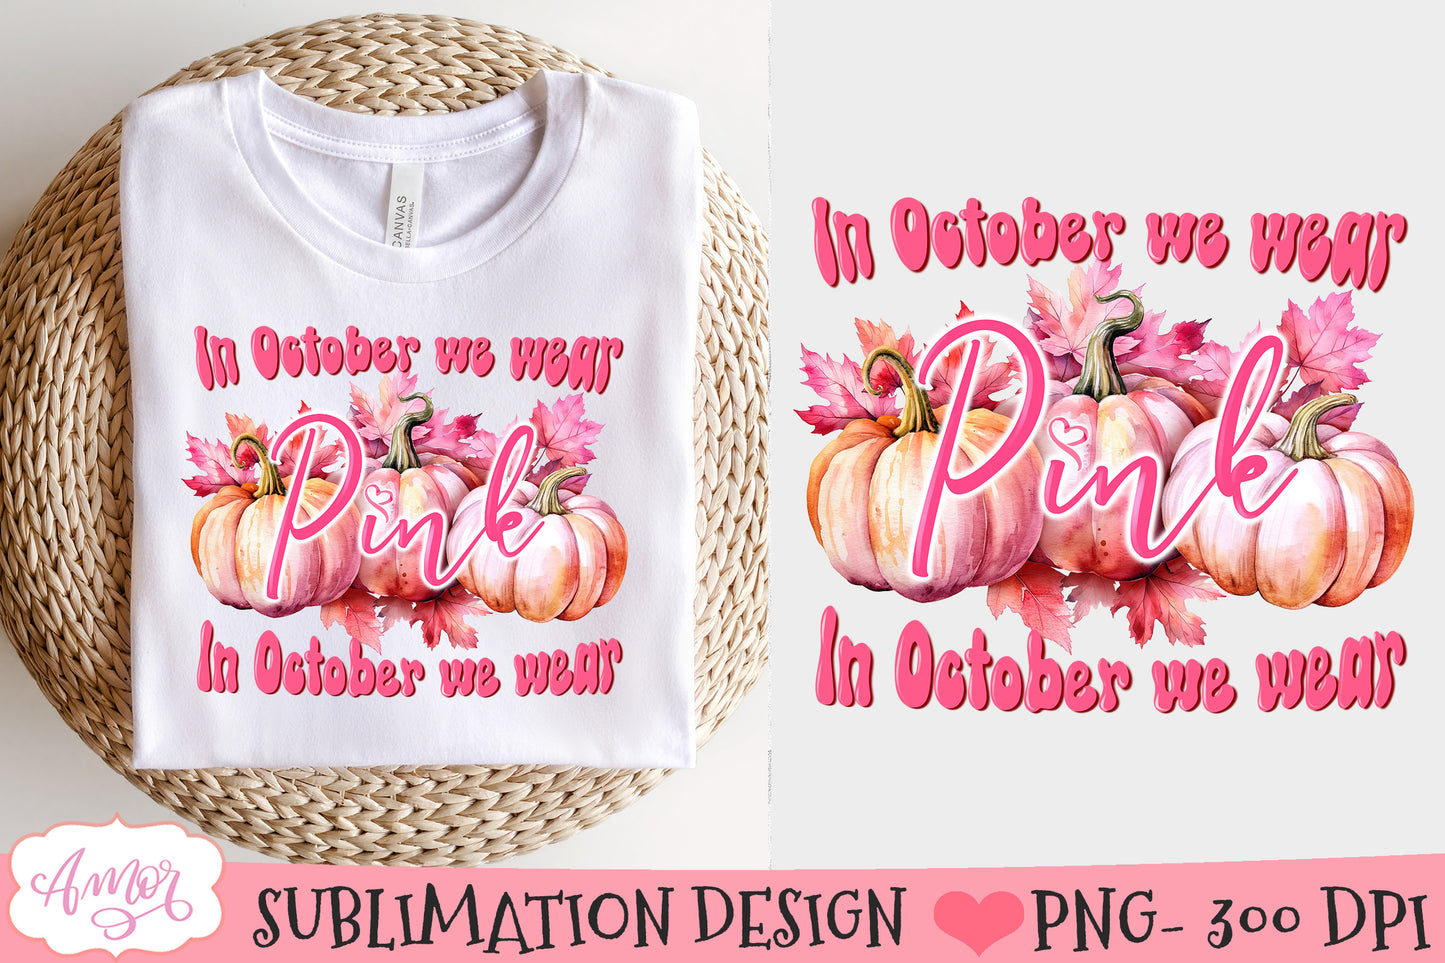 In October we wear pink PNG design for sublimation